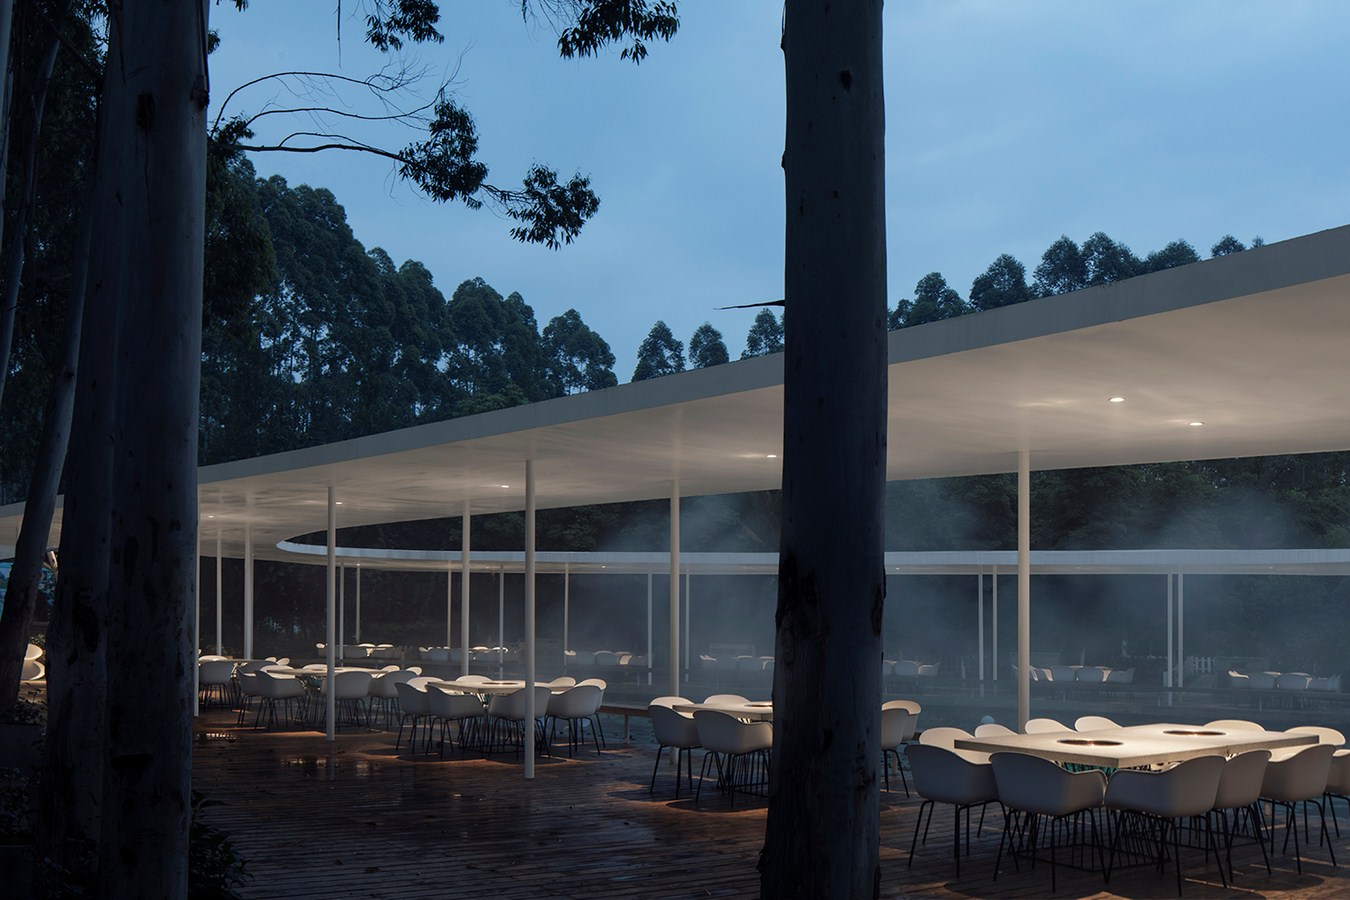 Garden Hotpot Restaurant By MUDA-Architects - Sheet6